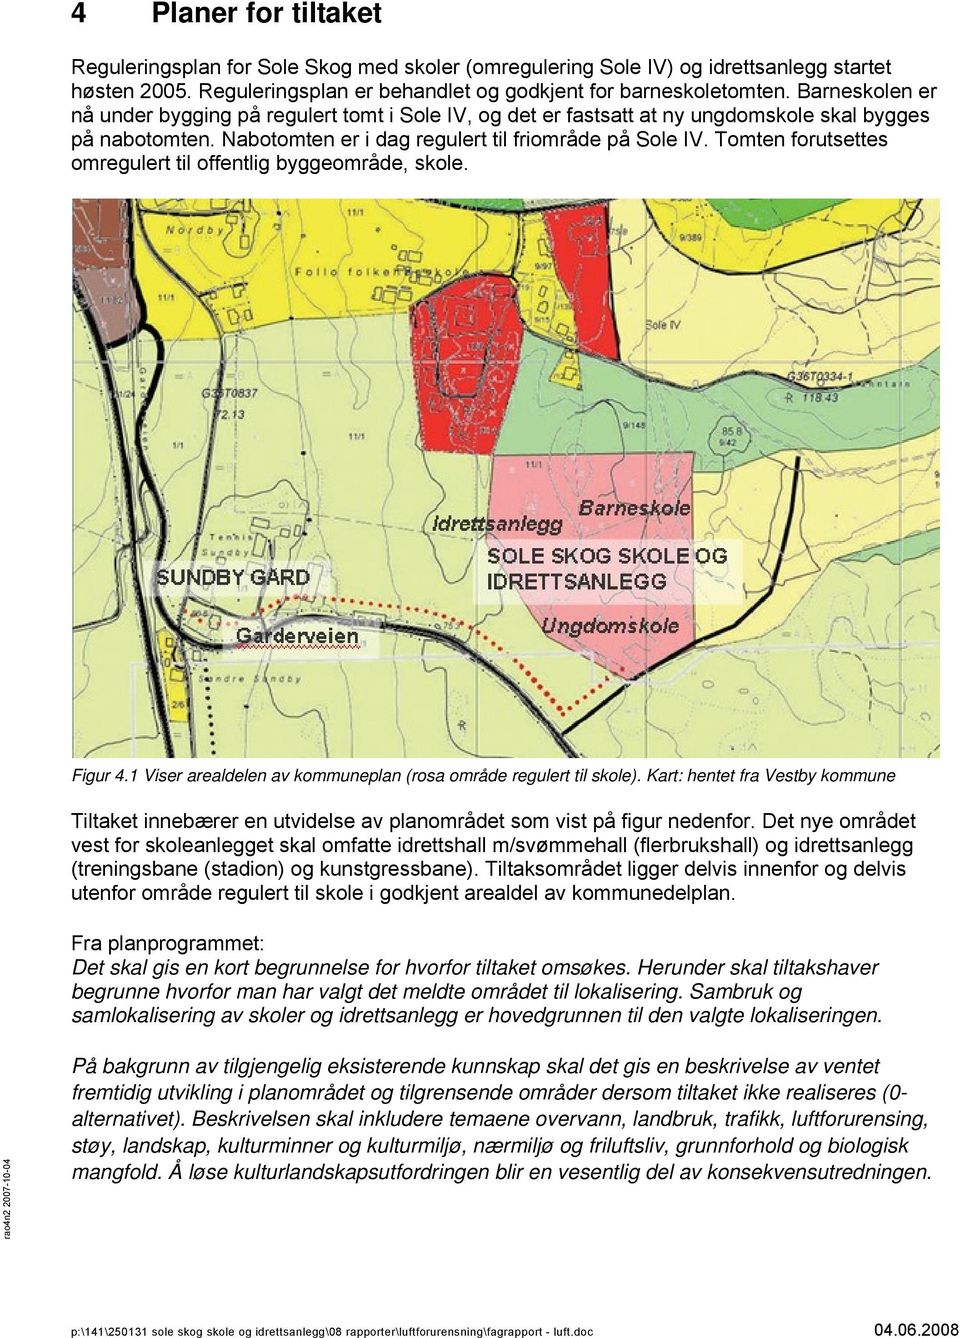 Tomten forutsettes omregulert til offentlig byggeområde, skole. Figur 4.1 Viser arealdelen av kommuneplan (rosa område regulert til skole).